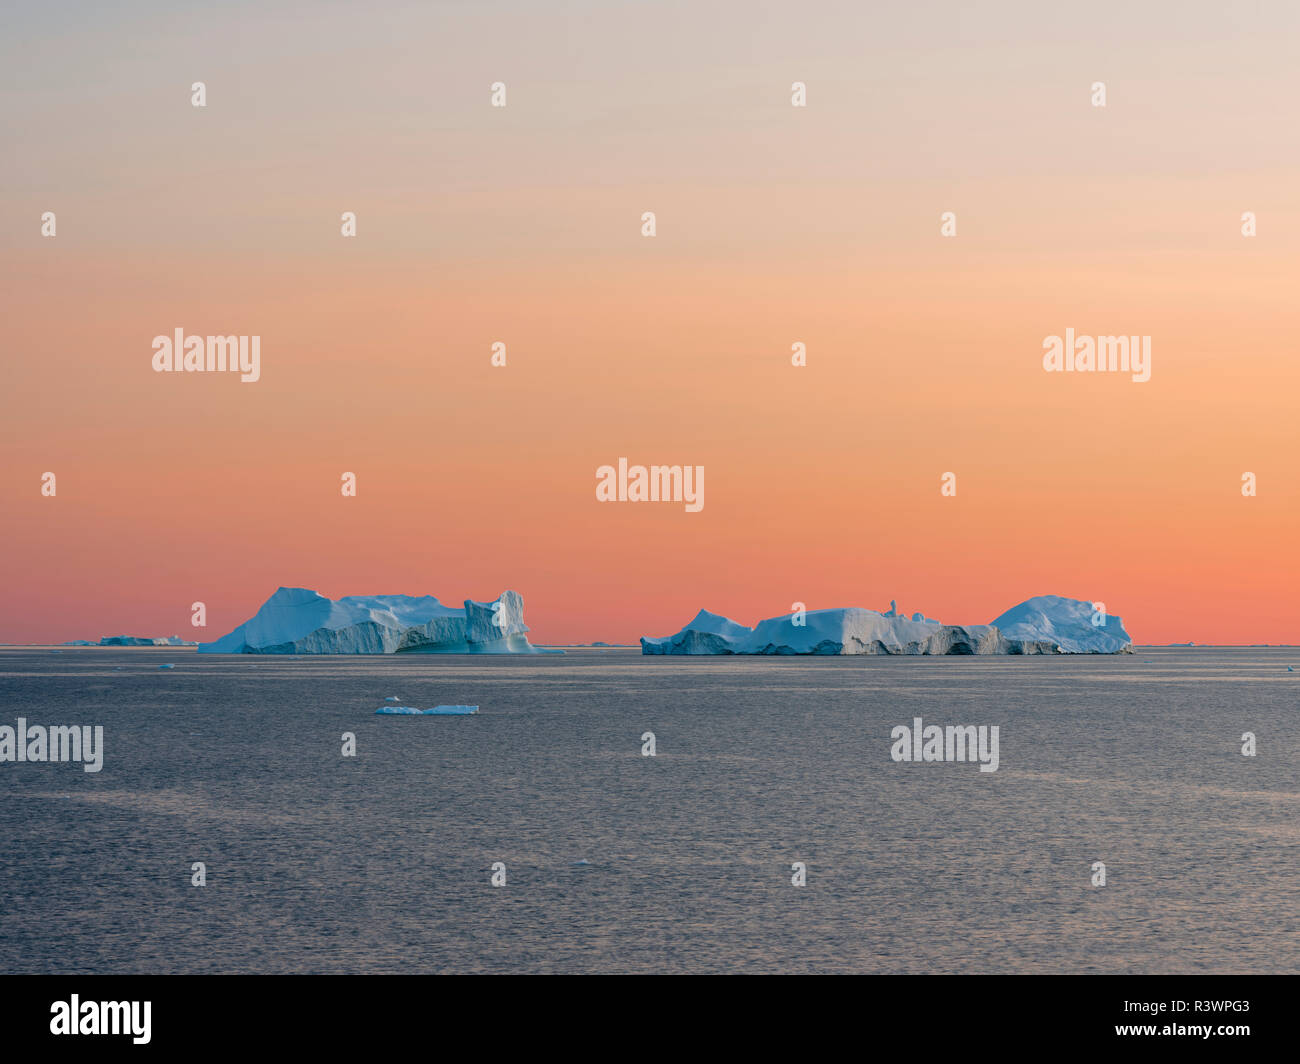 Les icebergs dans la baie de Disko. Oqaatsut village Inuit (autrefois appelé Rodebay) situé au Groenland, Danemark Banque D'Images